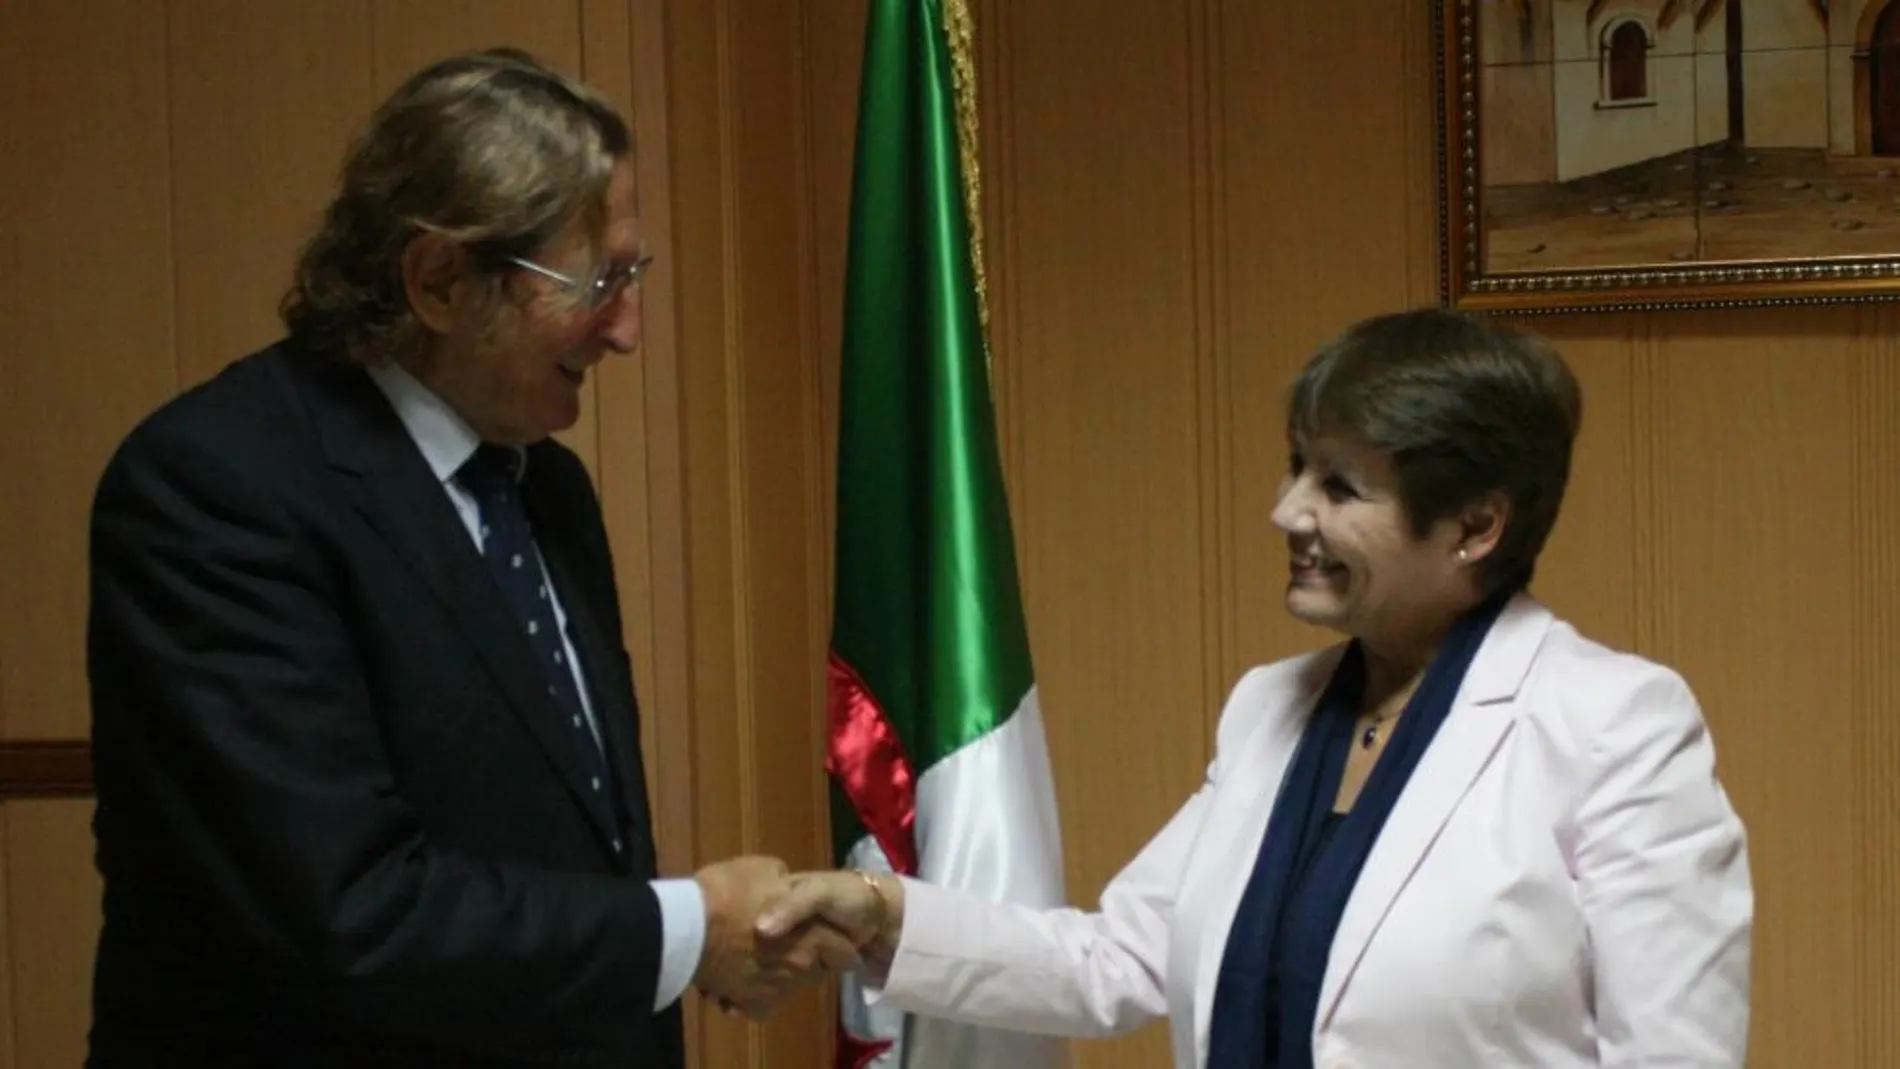 Finalizada la entrevista entre ambos personajes, Nouria Benghabrit despidió al Presidente de Paz y Cooperación Joaquín Antuña con un fraternal apretón de manos delante de la bandera de Argelia.